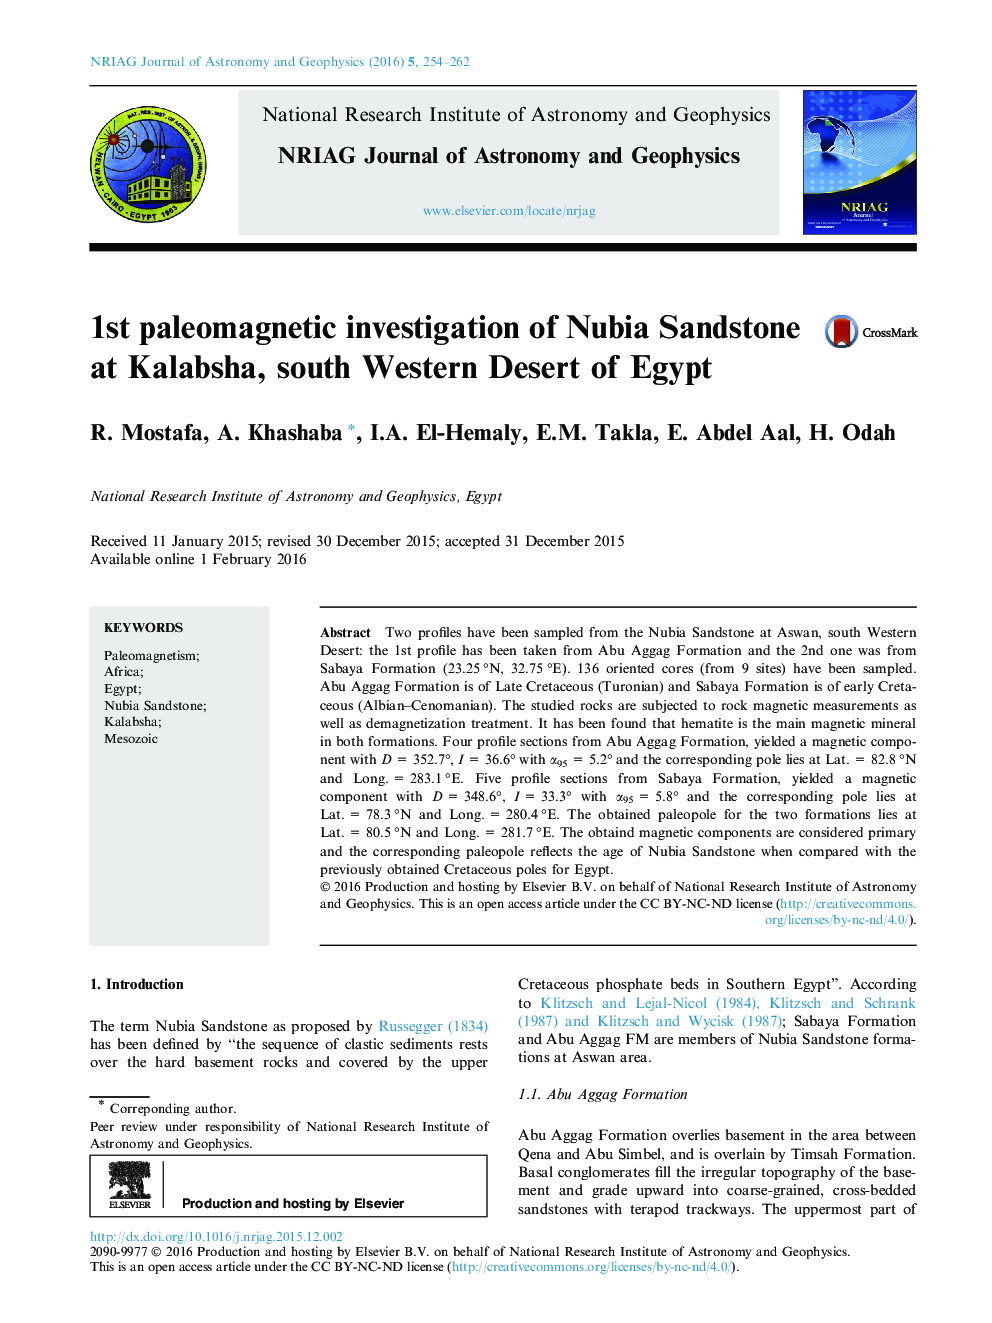 بررسی پالئومغناطیسی نخست از ماسه سنگ نوبیا در Kalabsha، صحرای جنوب غربی مصر